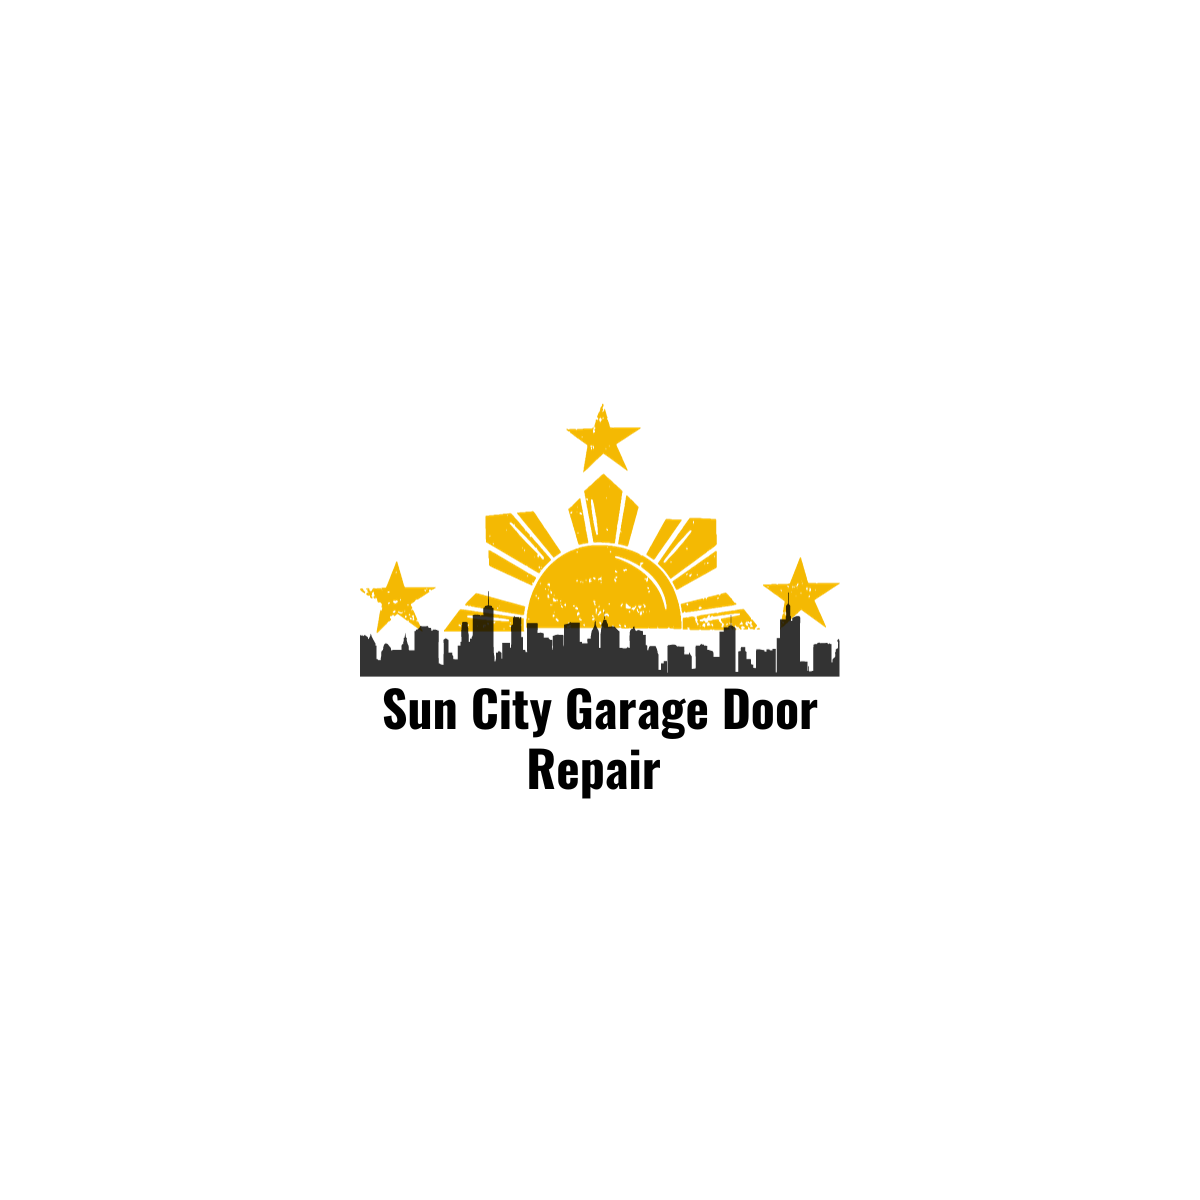 Sun City Garage Door Repair